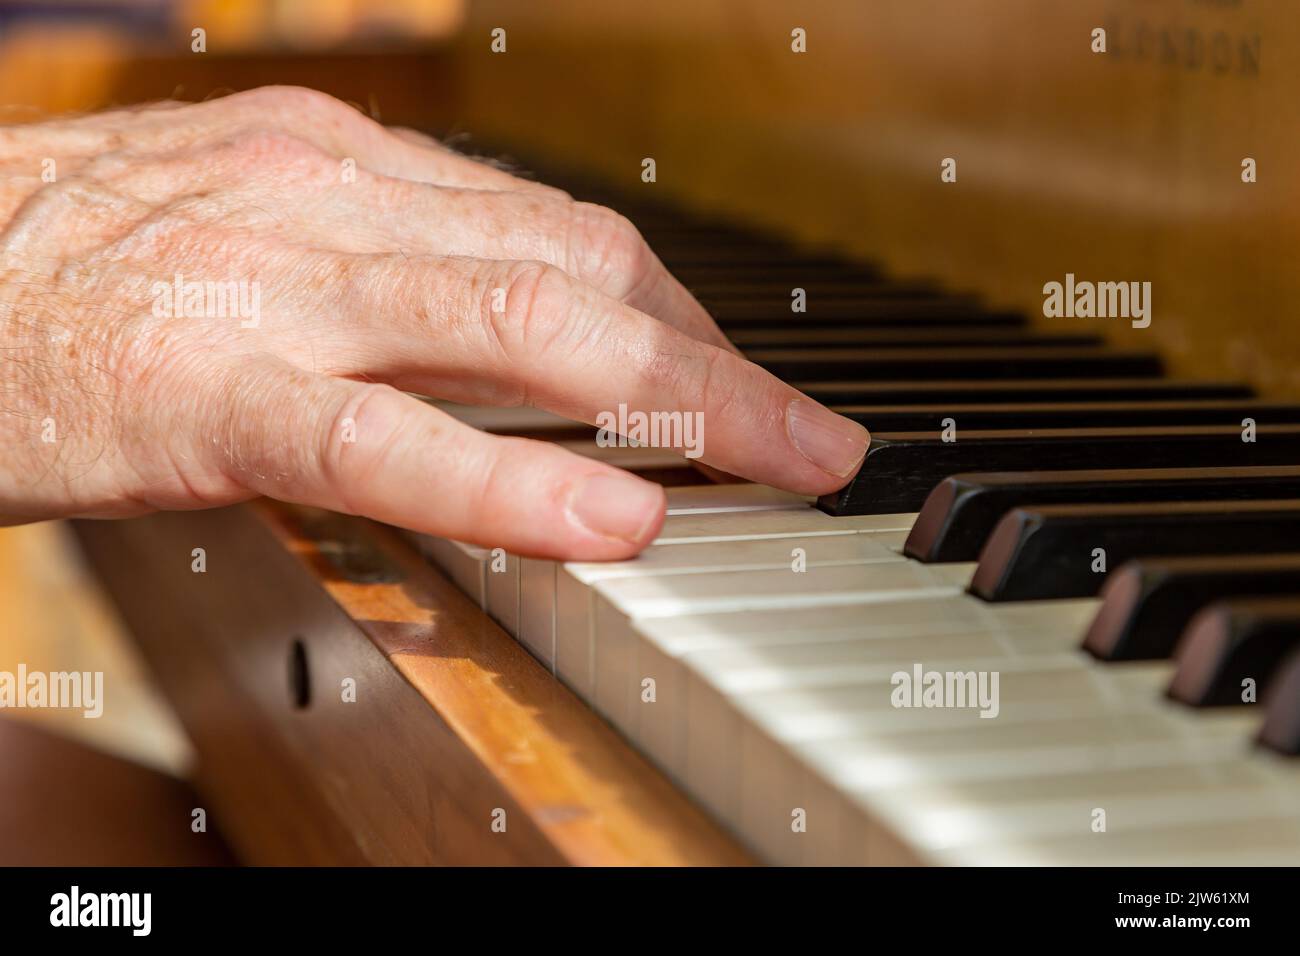 Un primer plano de las manos en las teclas del piano, con una profundidad de campo reducida Foto de stock